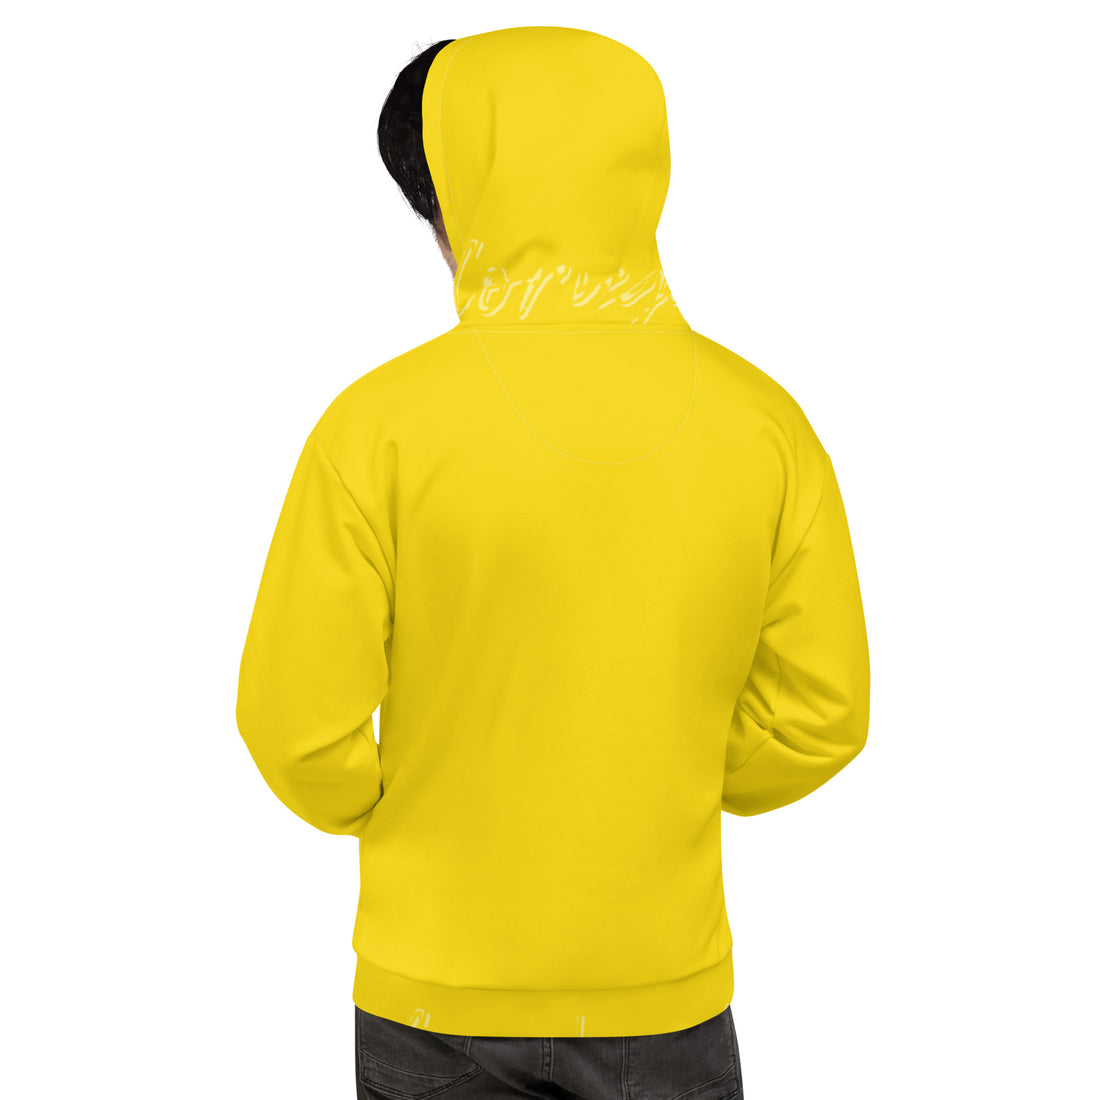 Very-Yellow Hoodie